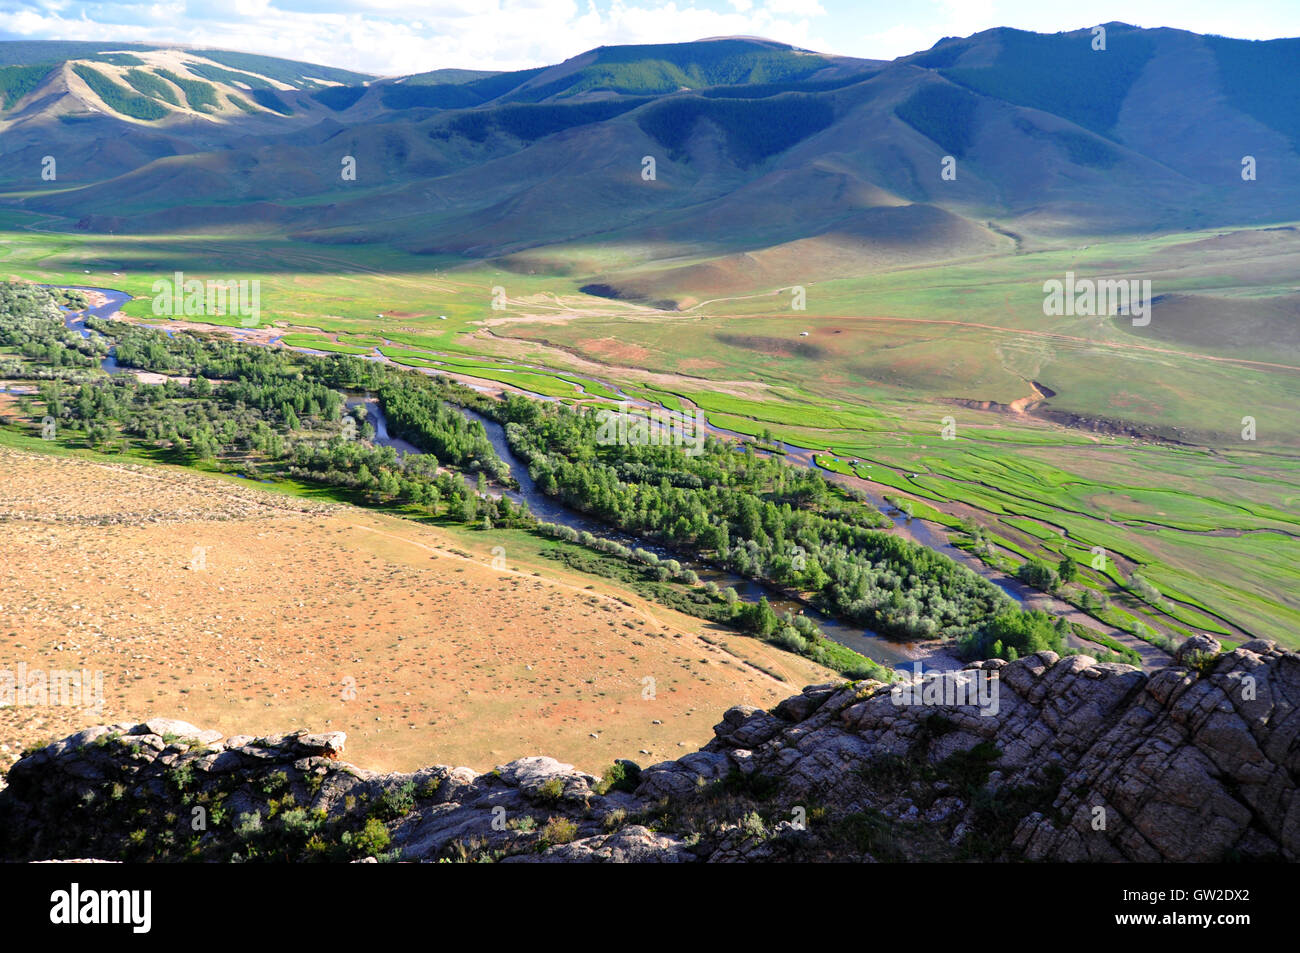 River valley, Tavagatai Mountains, Mongolia Stock Photo